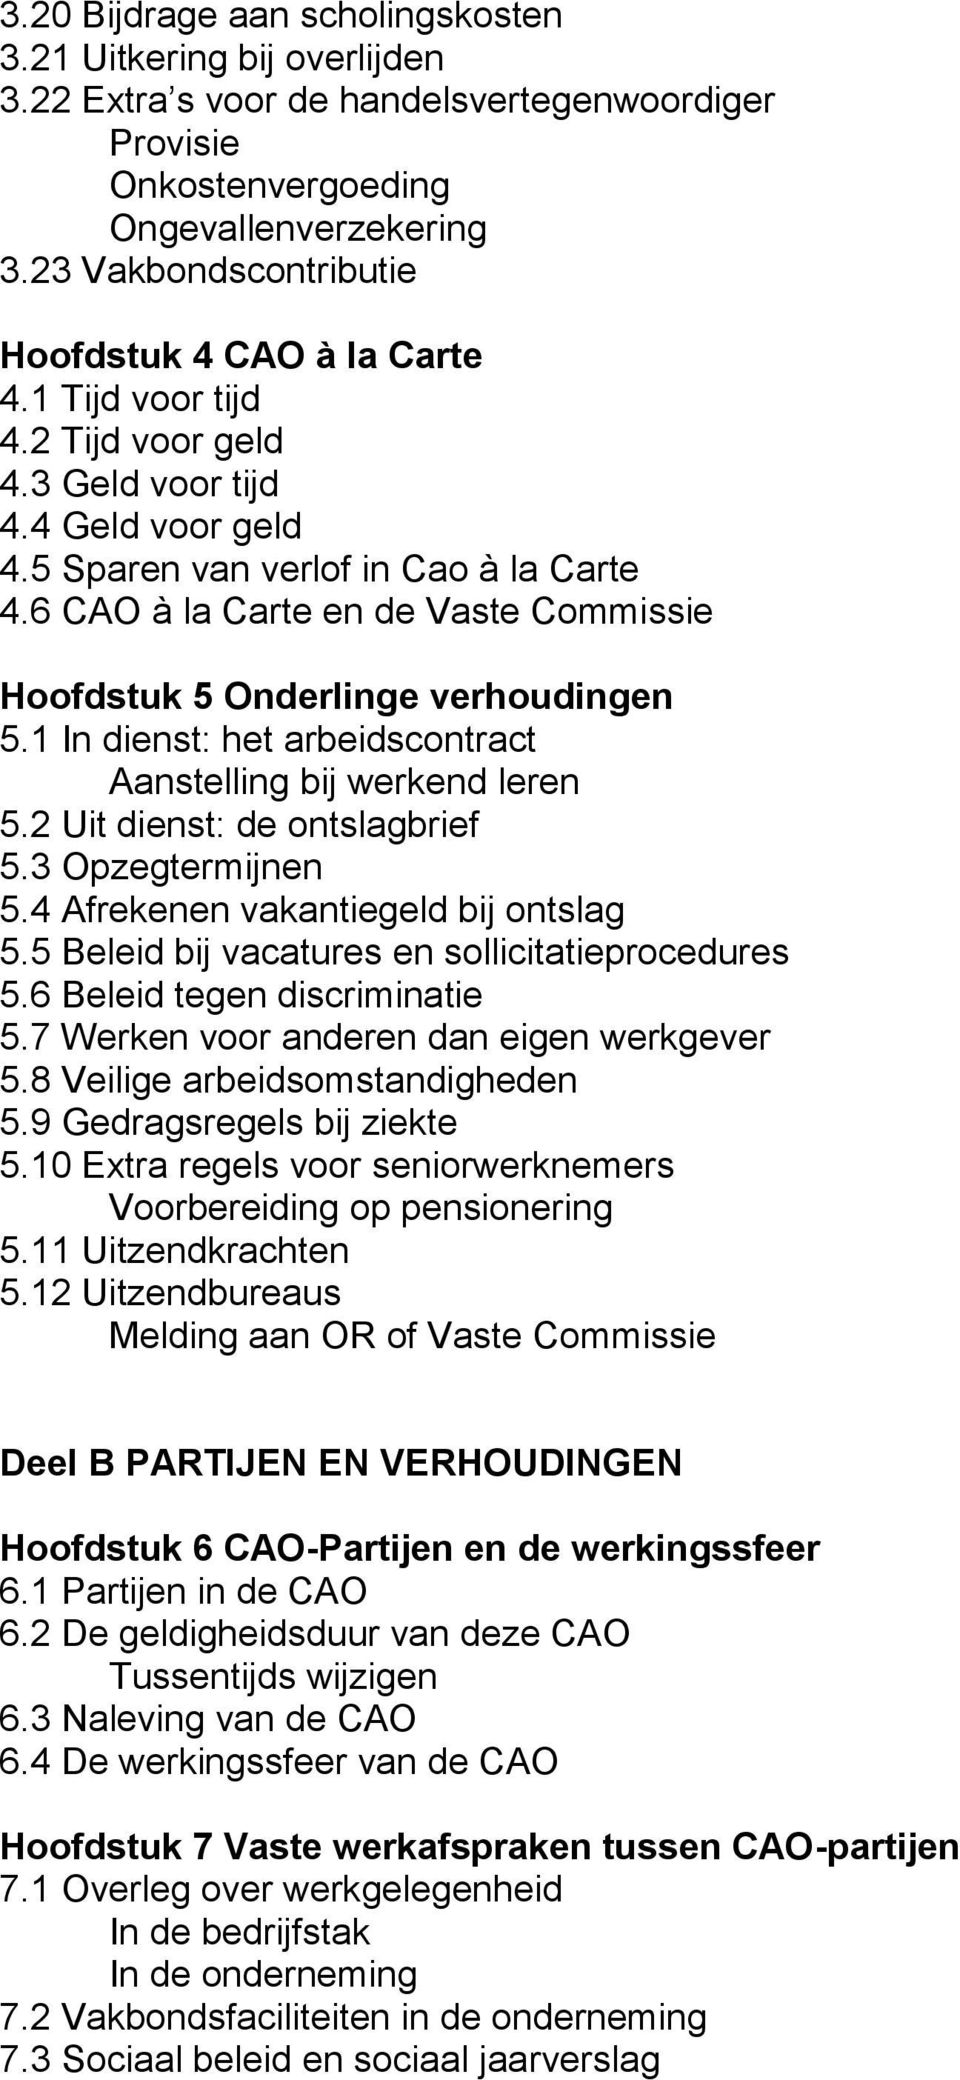 6 CAO à la Carte en de Vaste Commissie Hoofdstuk 5 Onderlinge verhoudingen 5.1 In dienst: het arbeidscontract Aanstelling bij werkend leren 5.2 Uit dienst: de ontslagbrief 5.3 Opzegtermijnen 5.